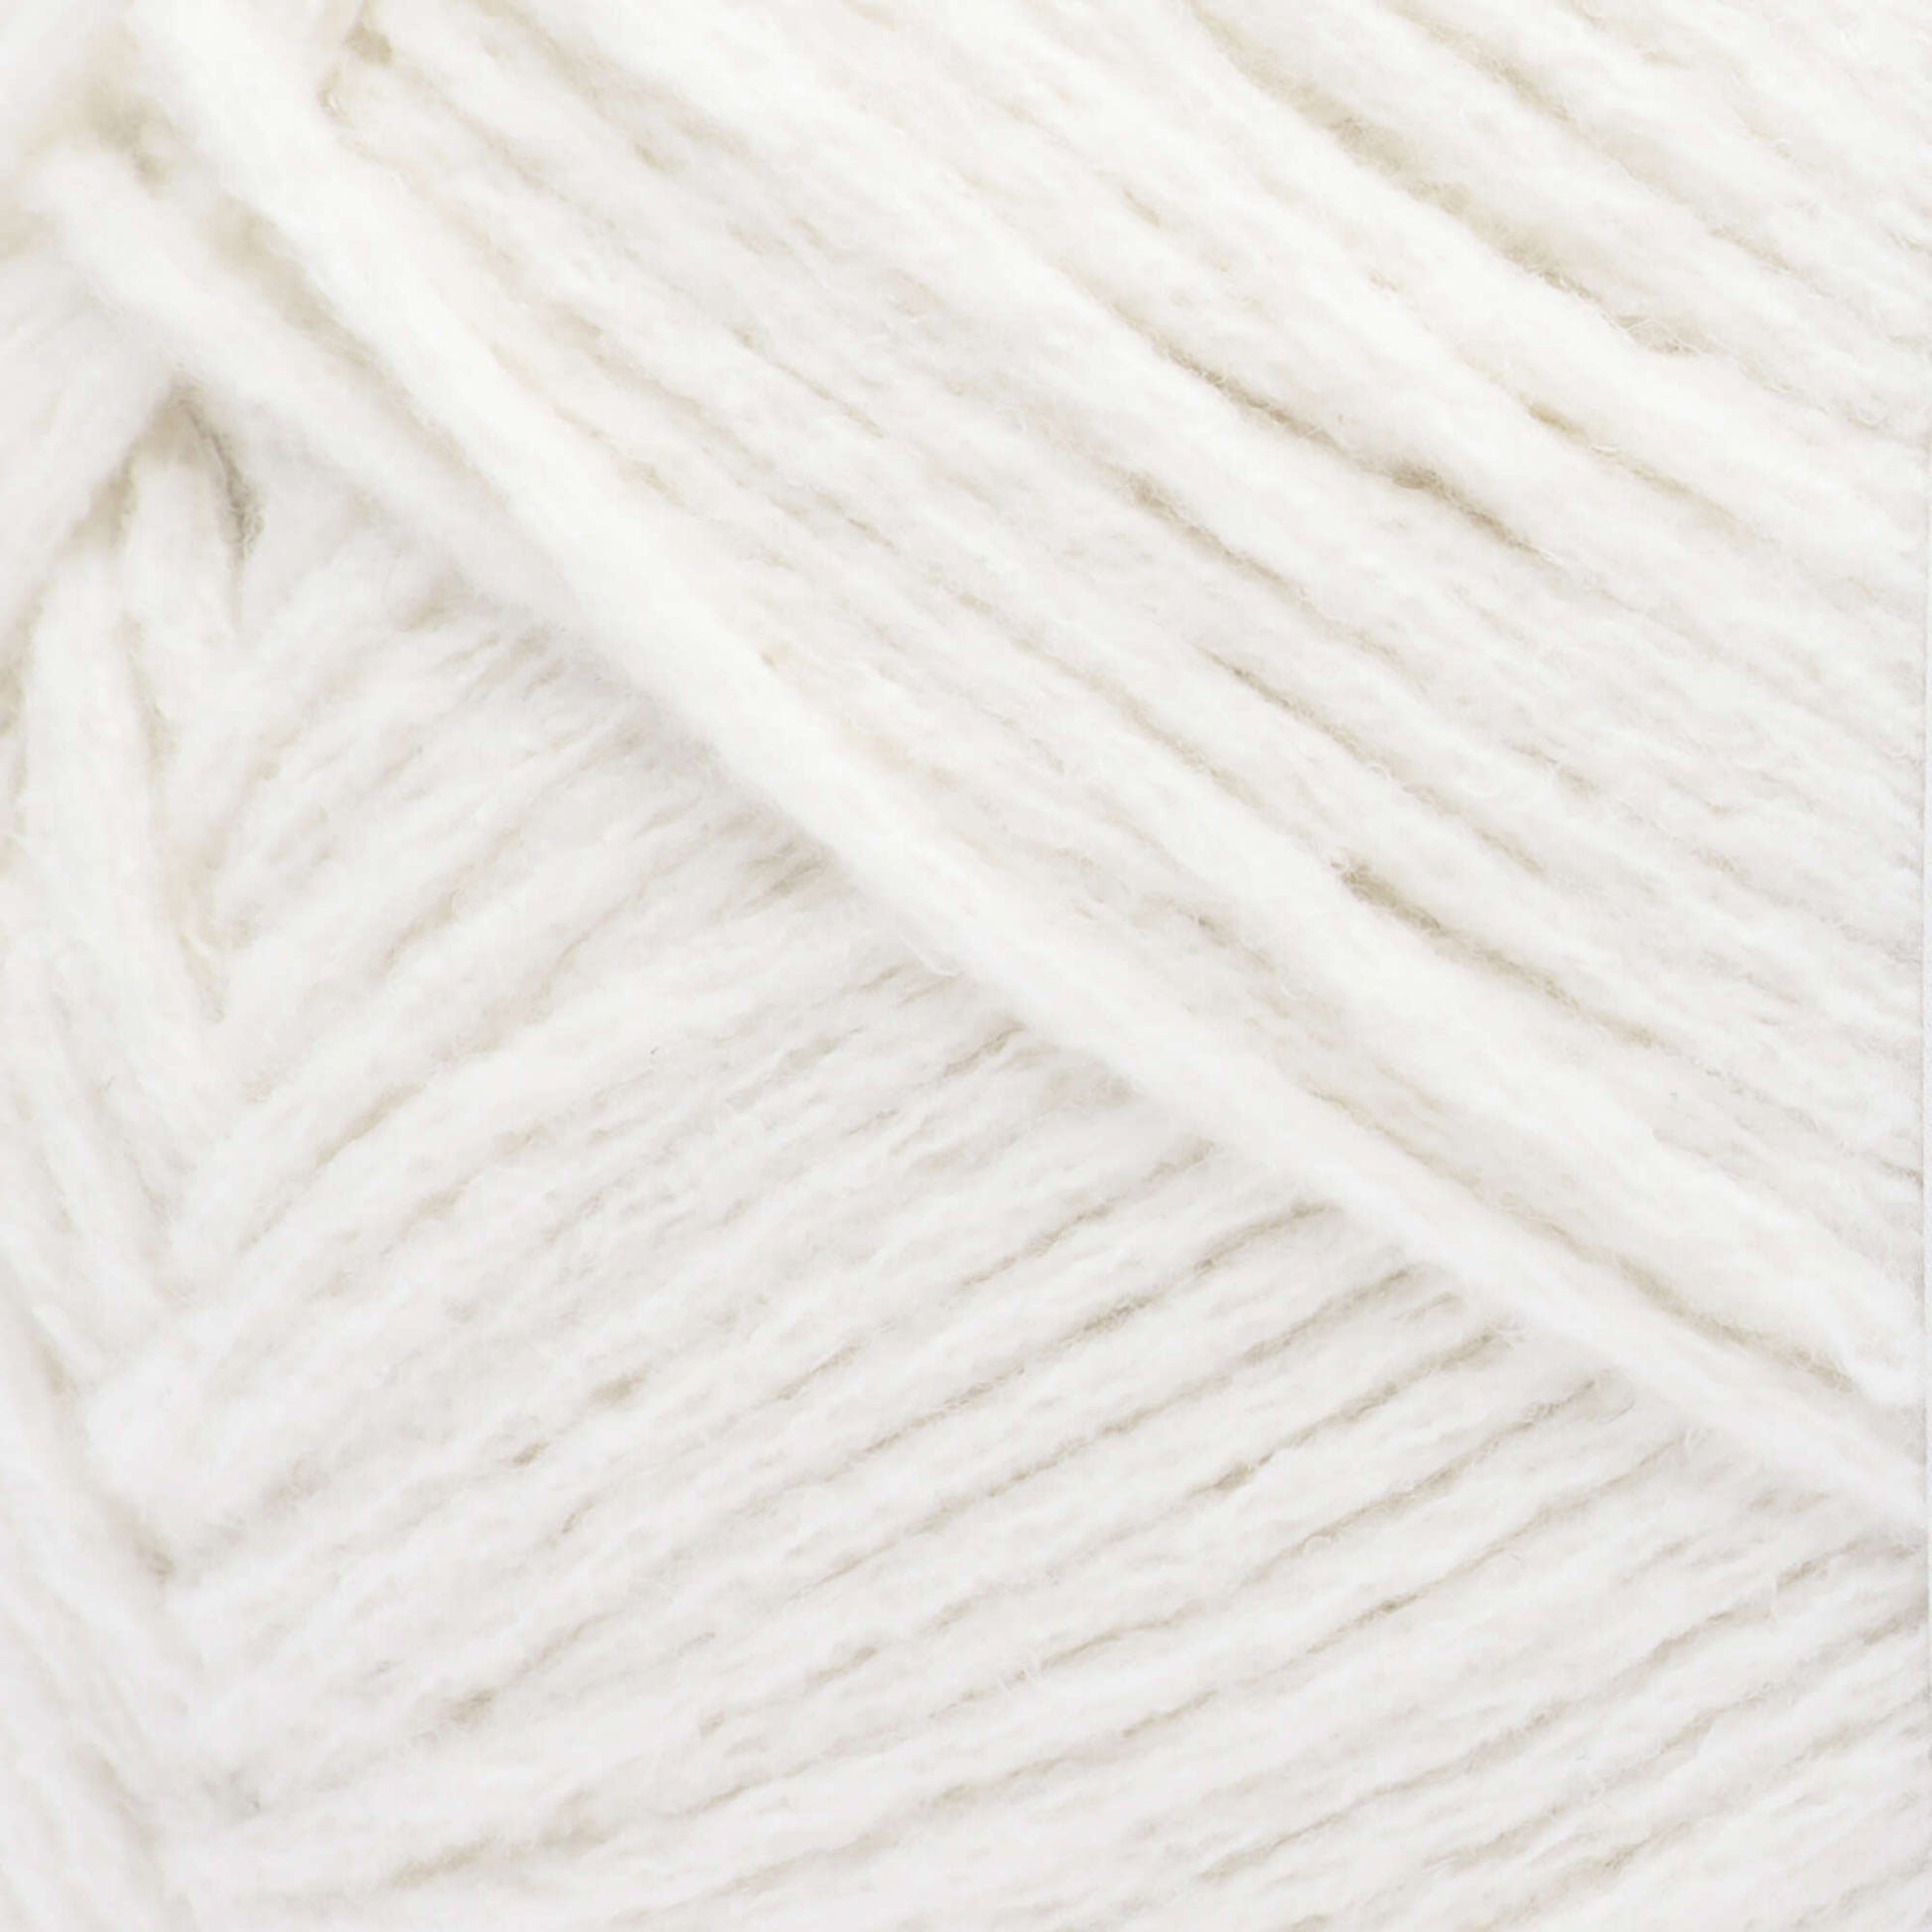 Bernat Bundle up Big Ball 8.8 Oz Beluga Knitting & Crochet Yarn 